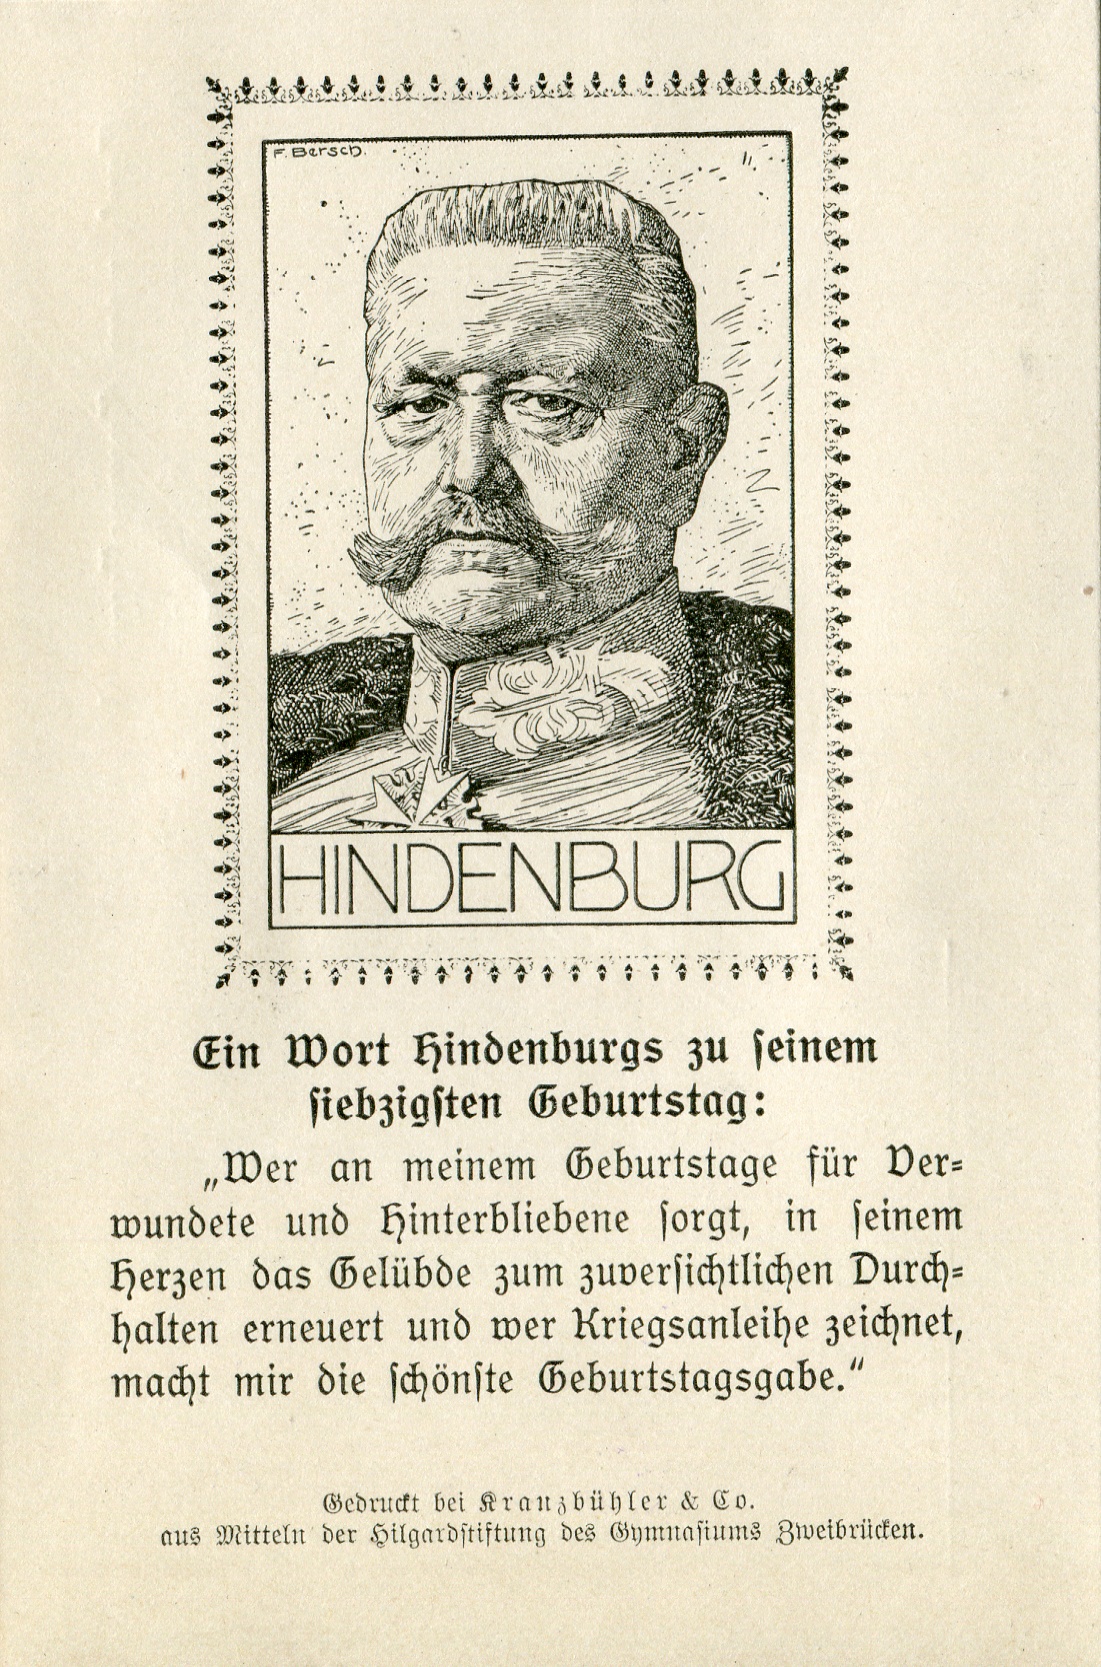 Bildpostkarte "Hindenburg 70. Jahre" (Historisches Museum der Pfalz, Speyer CC BY-NC-ND)